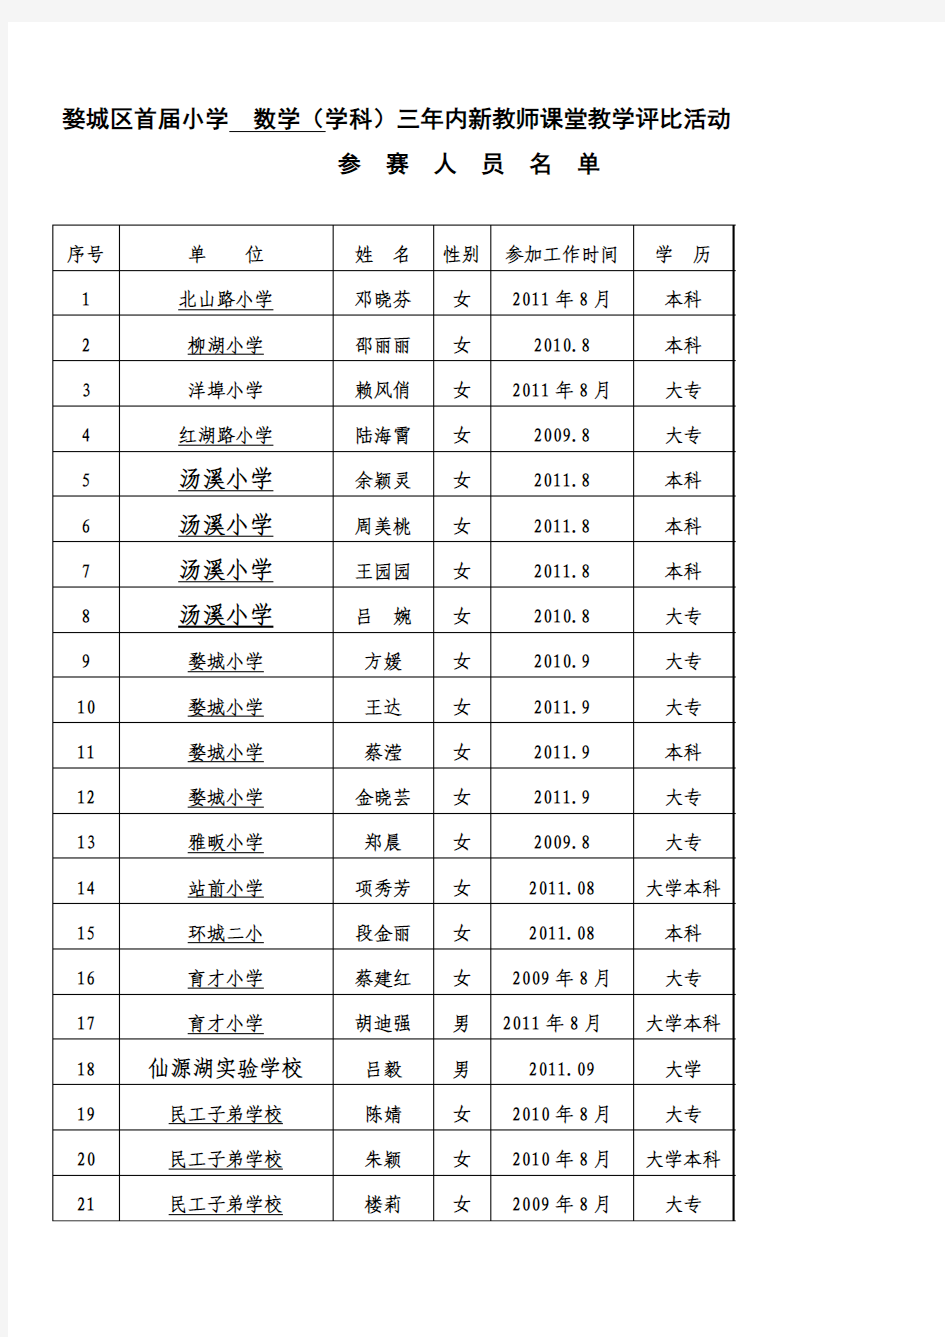 婺城区首届小学 数学(学科)三年内新教师课堂教学评比活动